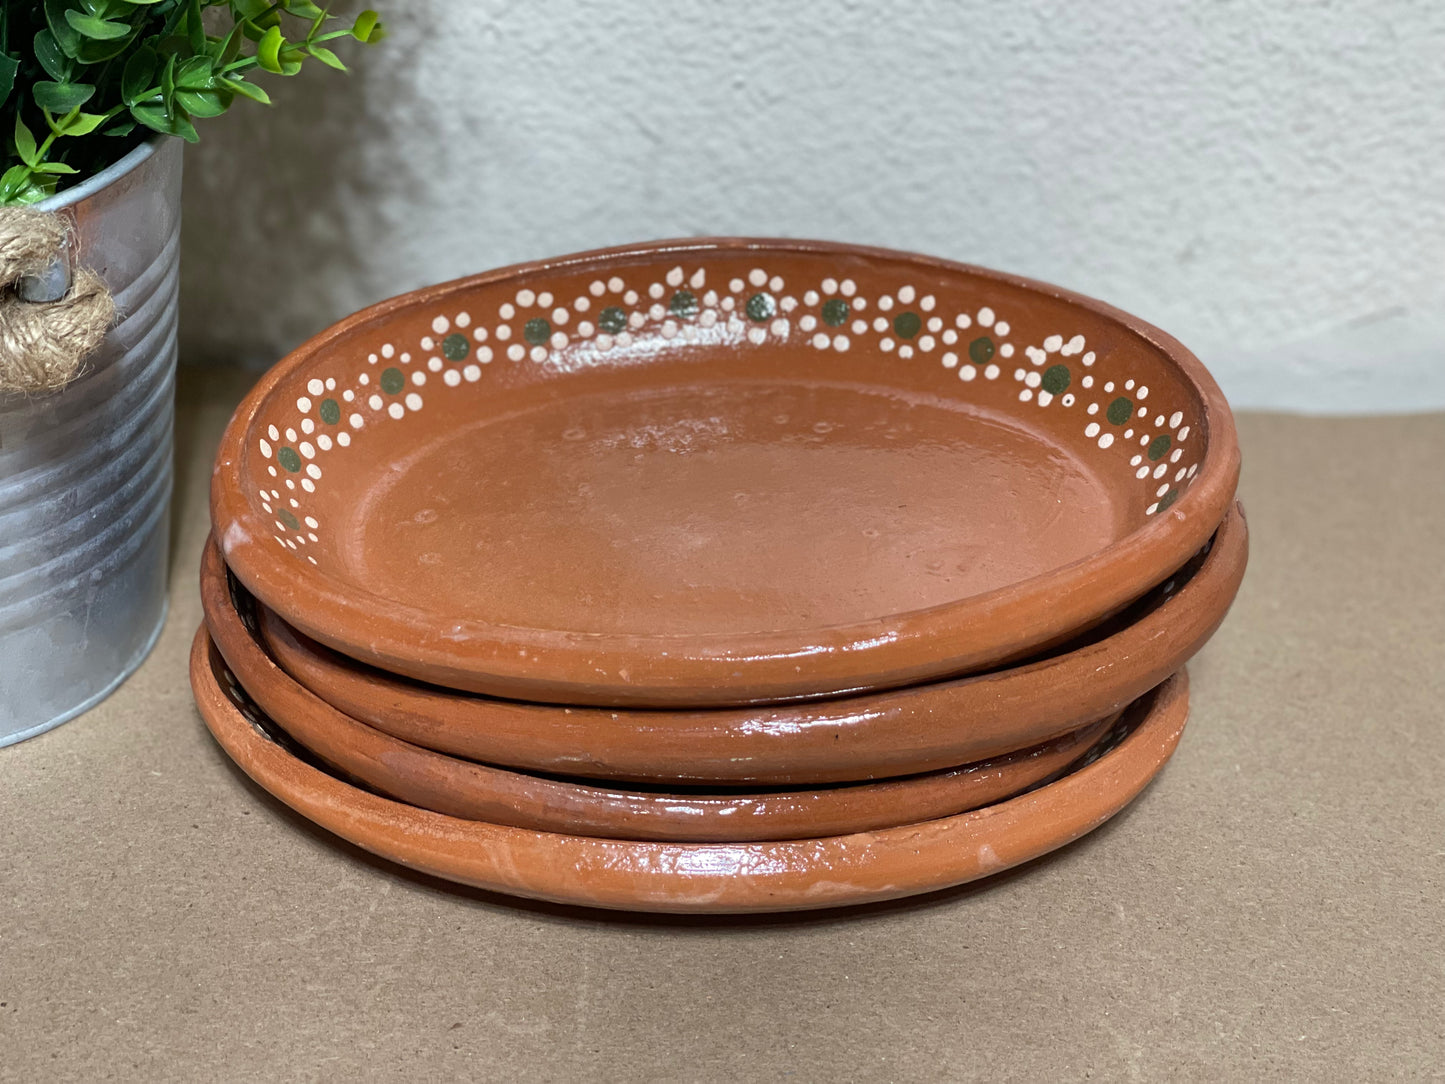 Mexican handmade 24cm oval plate 2pc set/Platos de barro ovalados